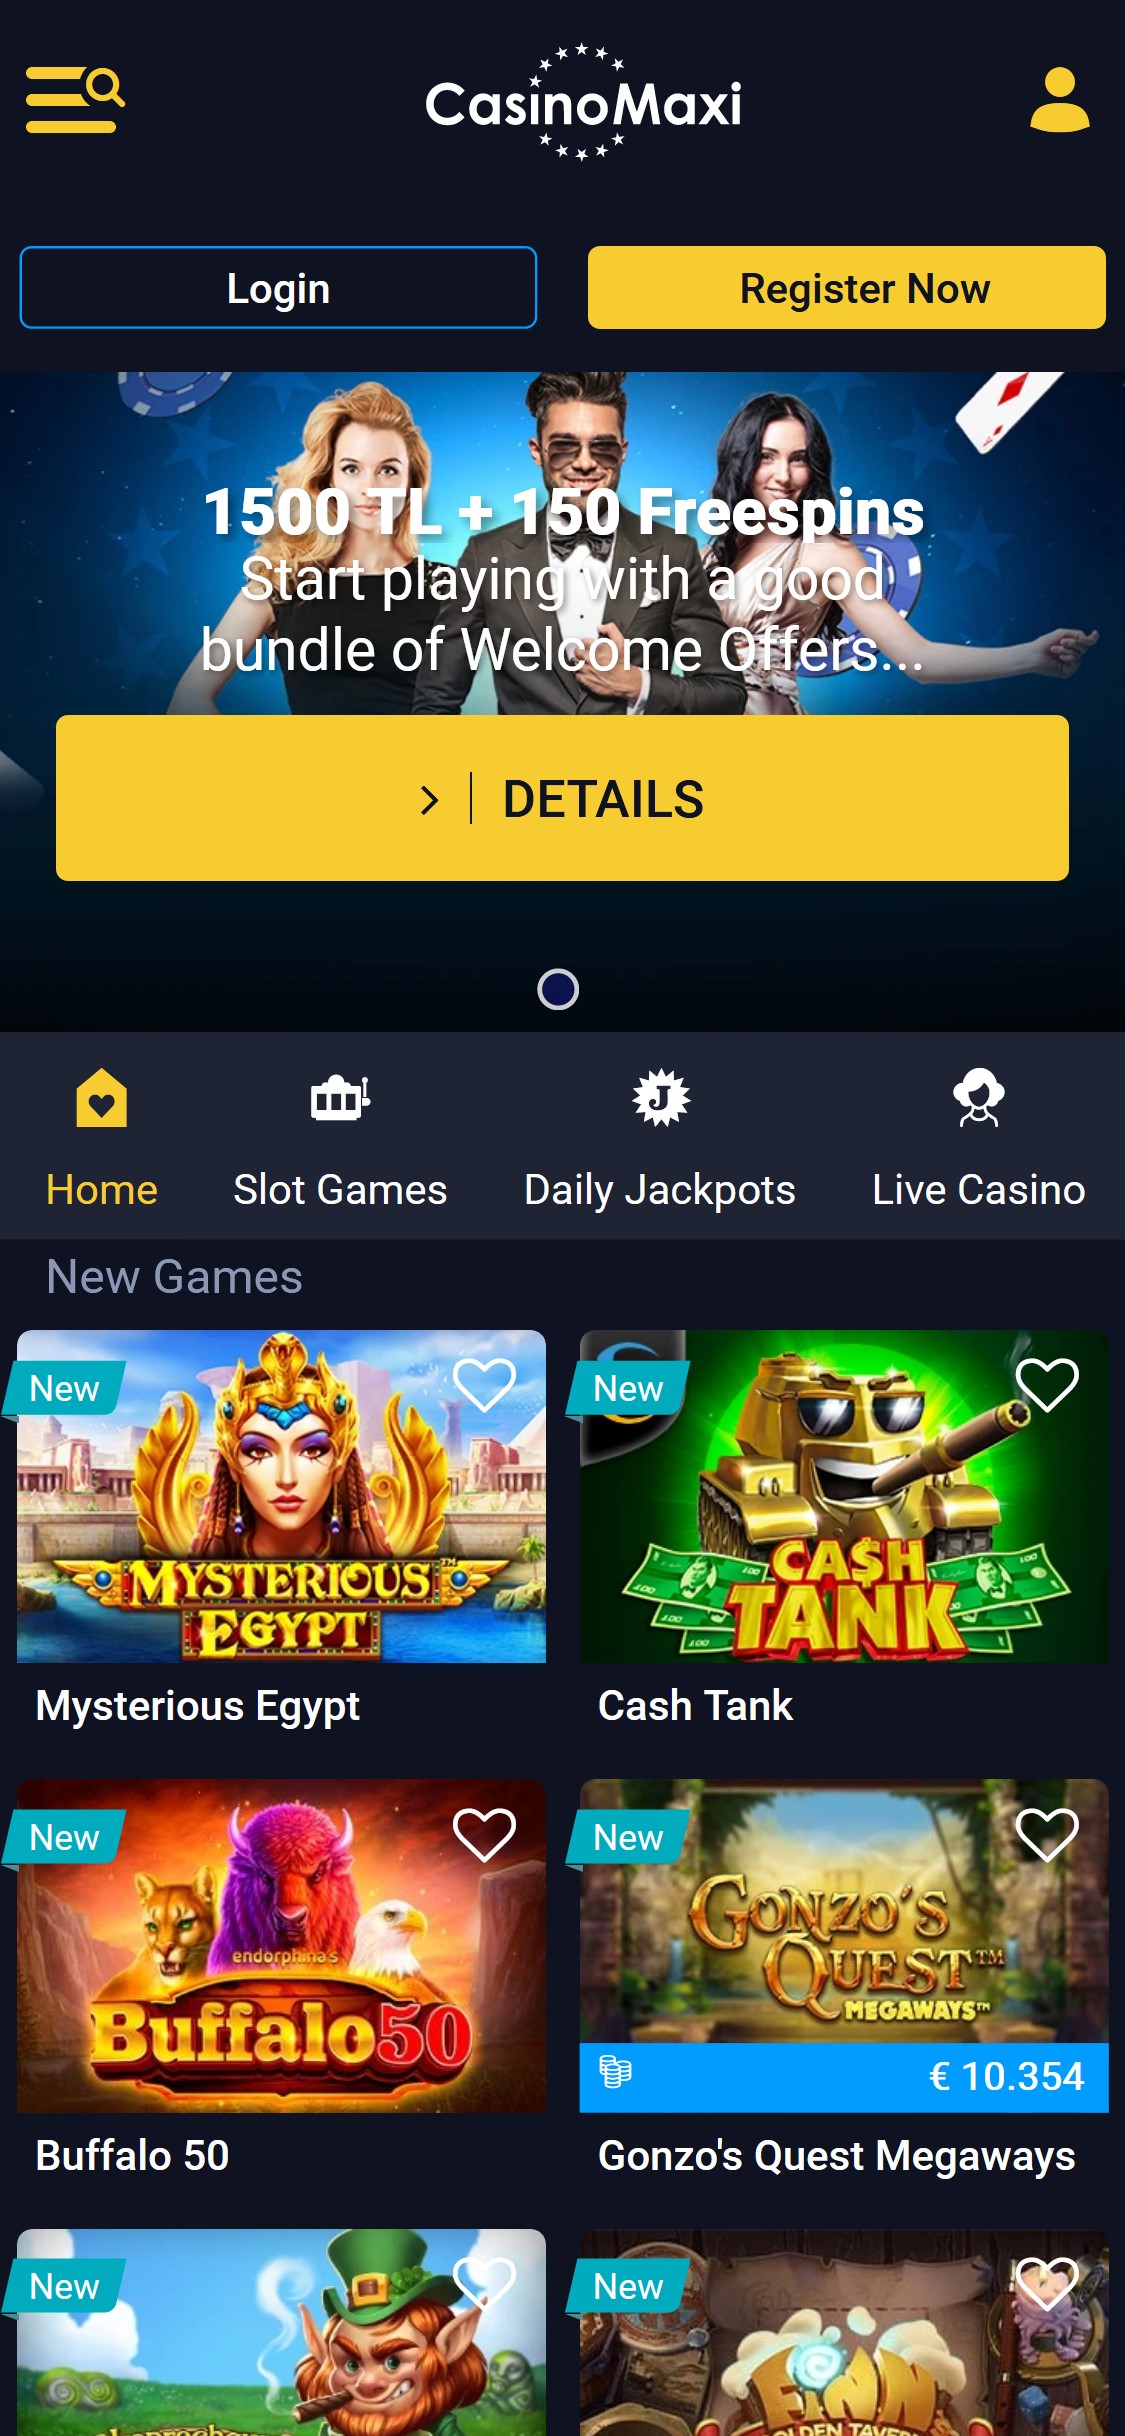 CasinoMaxi EU Mobile Review